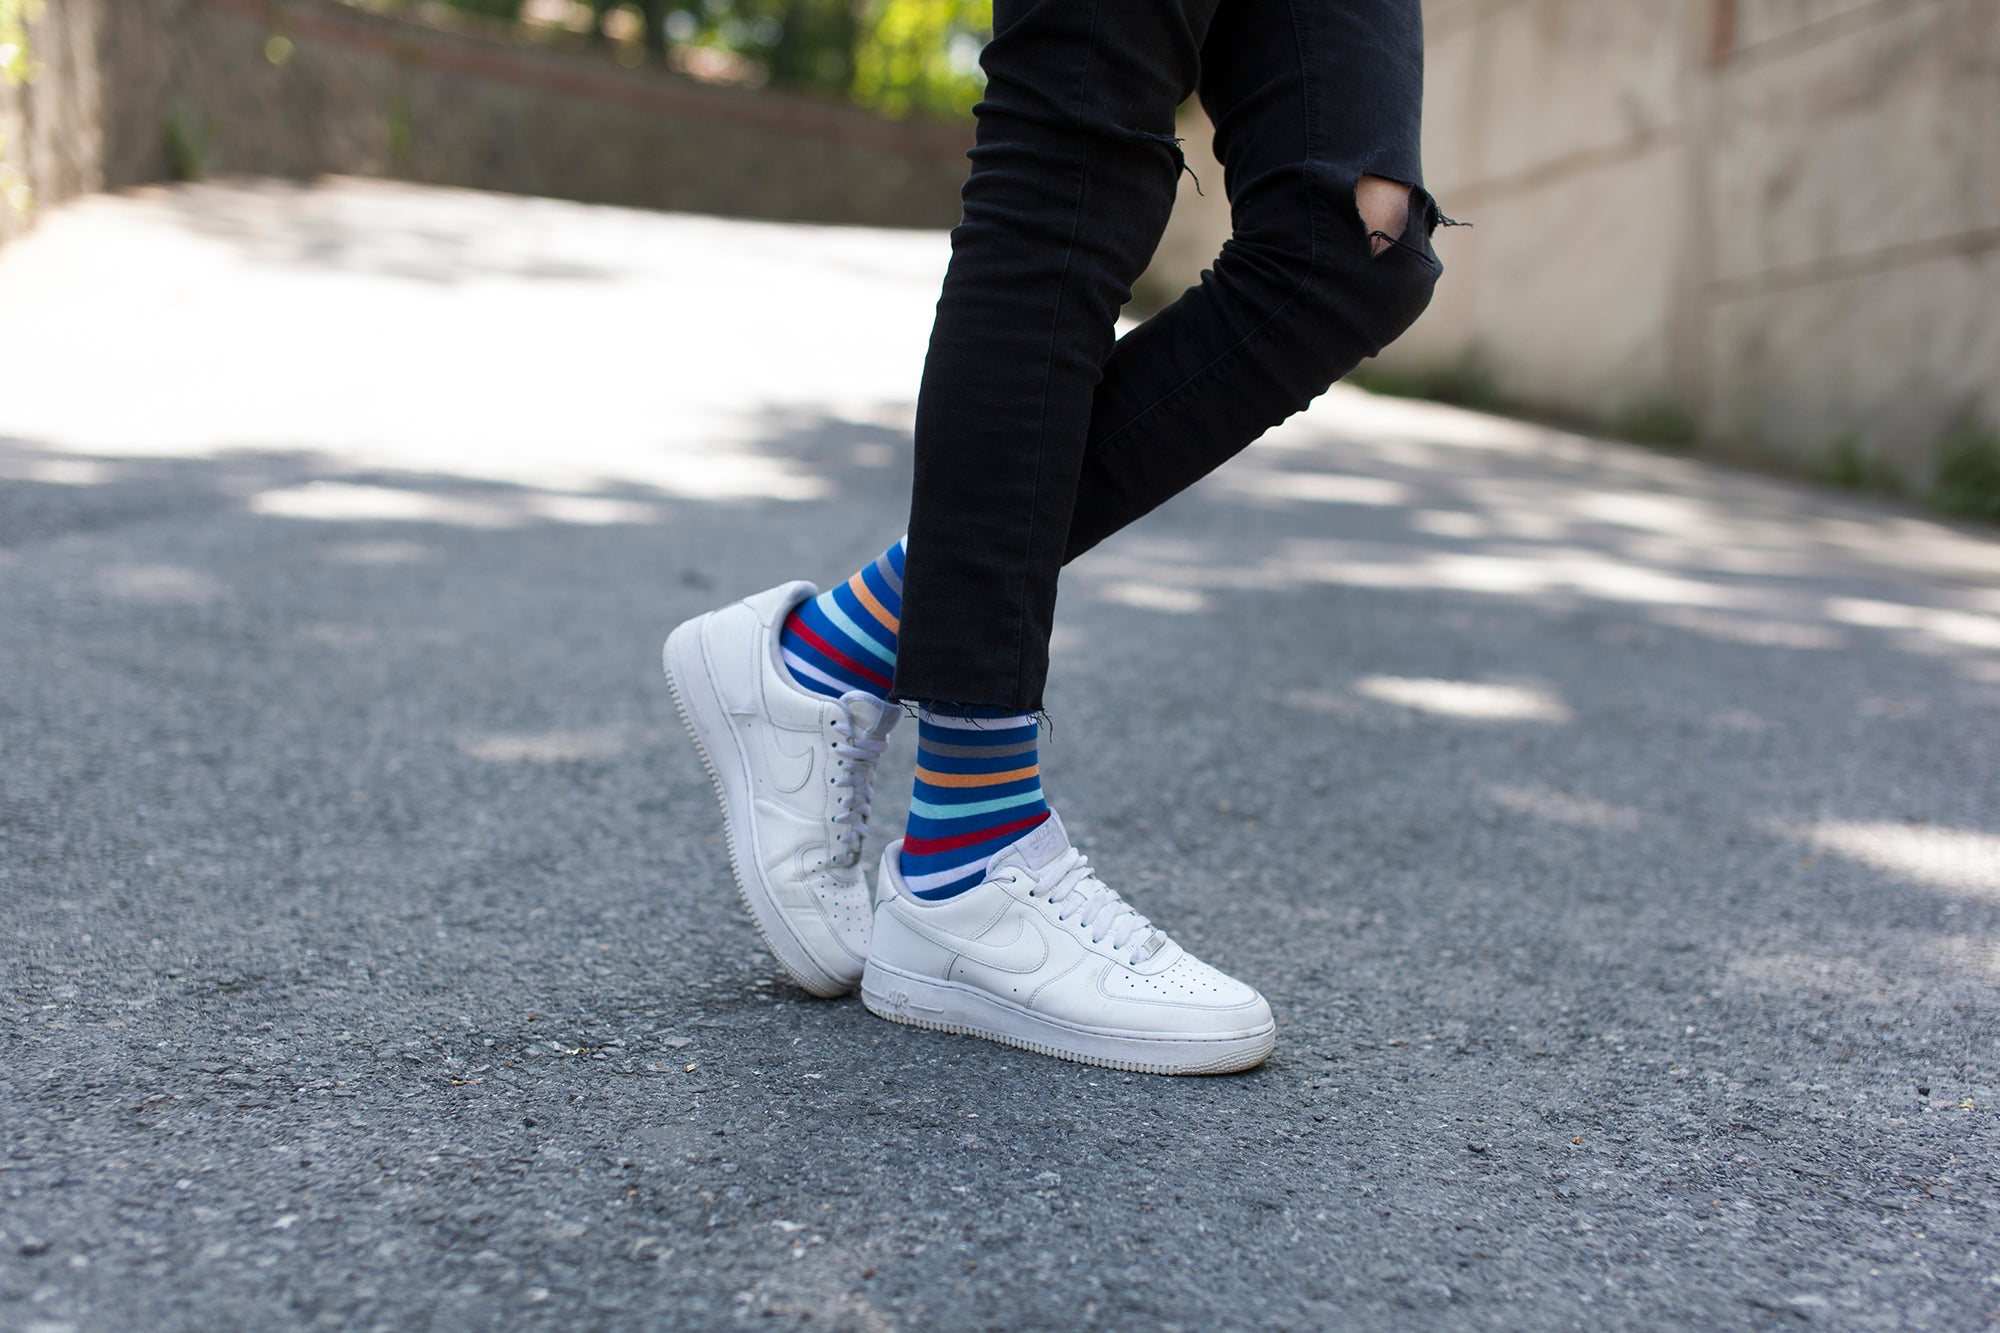 Men's Stylish Stripes Socks - Socks n Socks